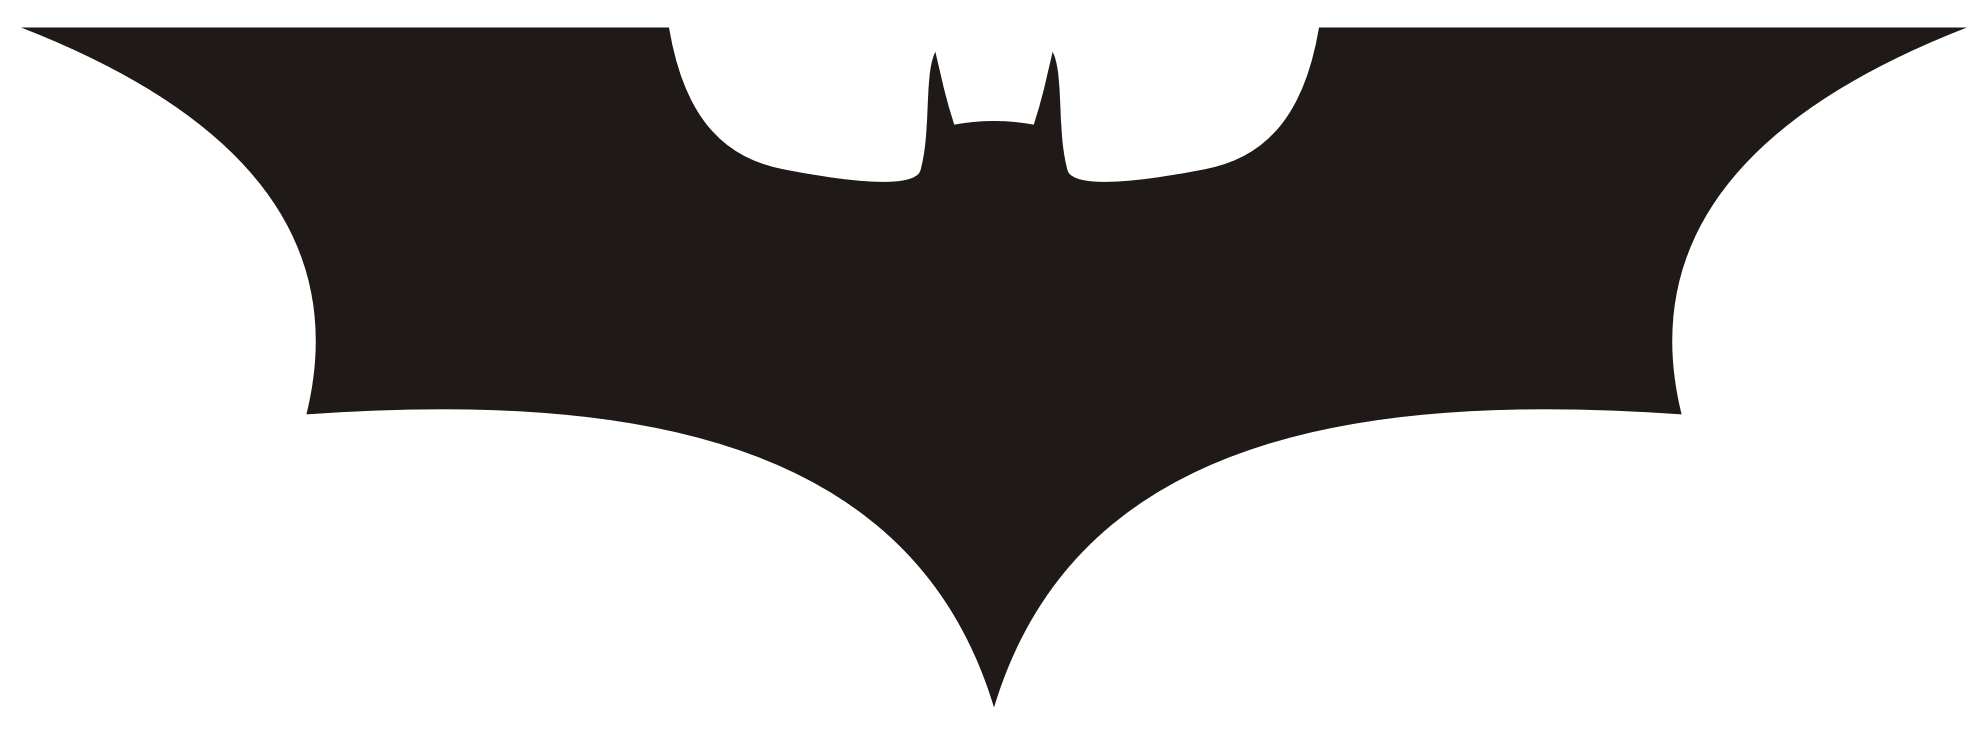 Batman Logos and Batman fan art - ClipArt Best - ClipArt Best